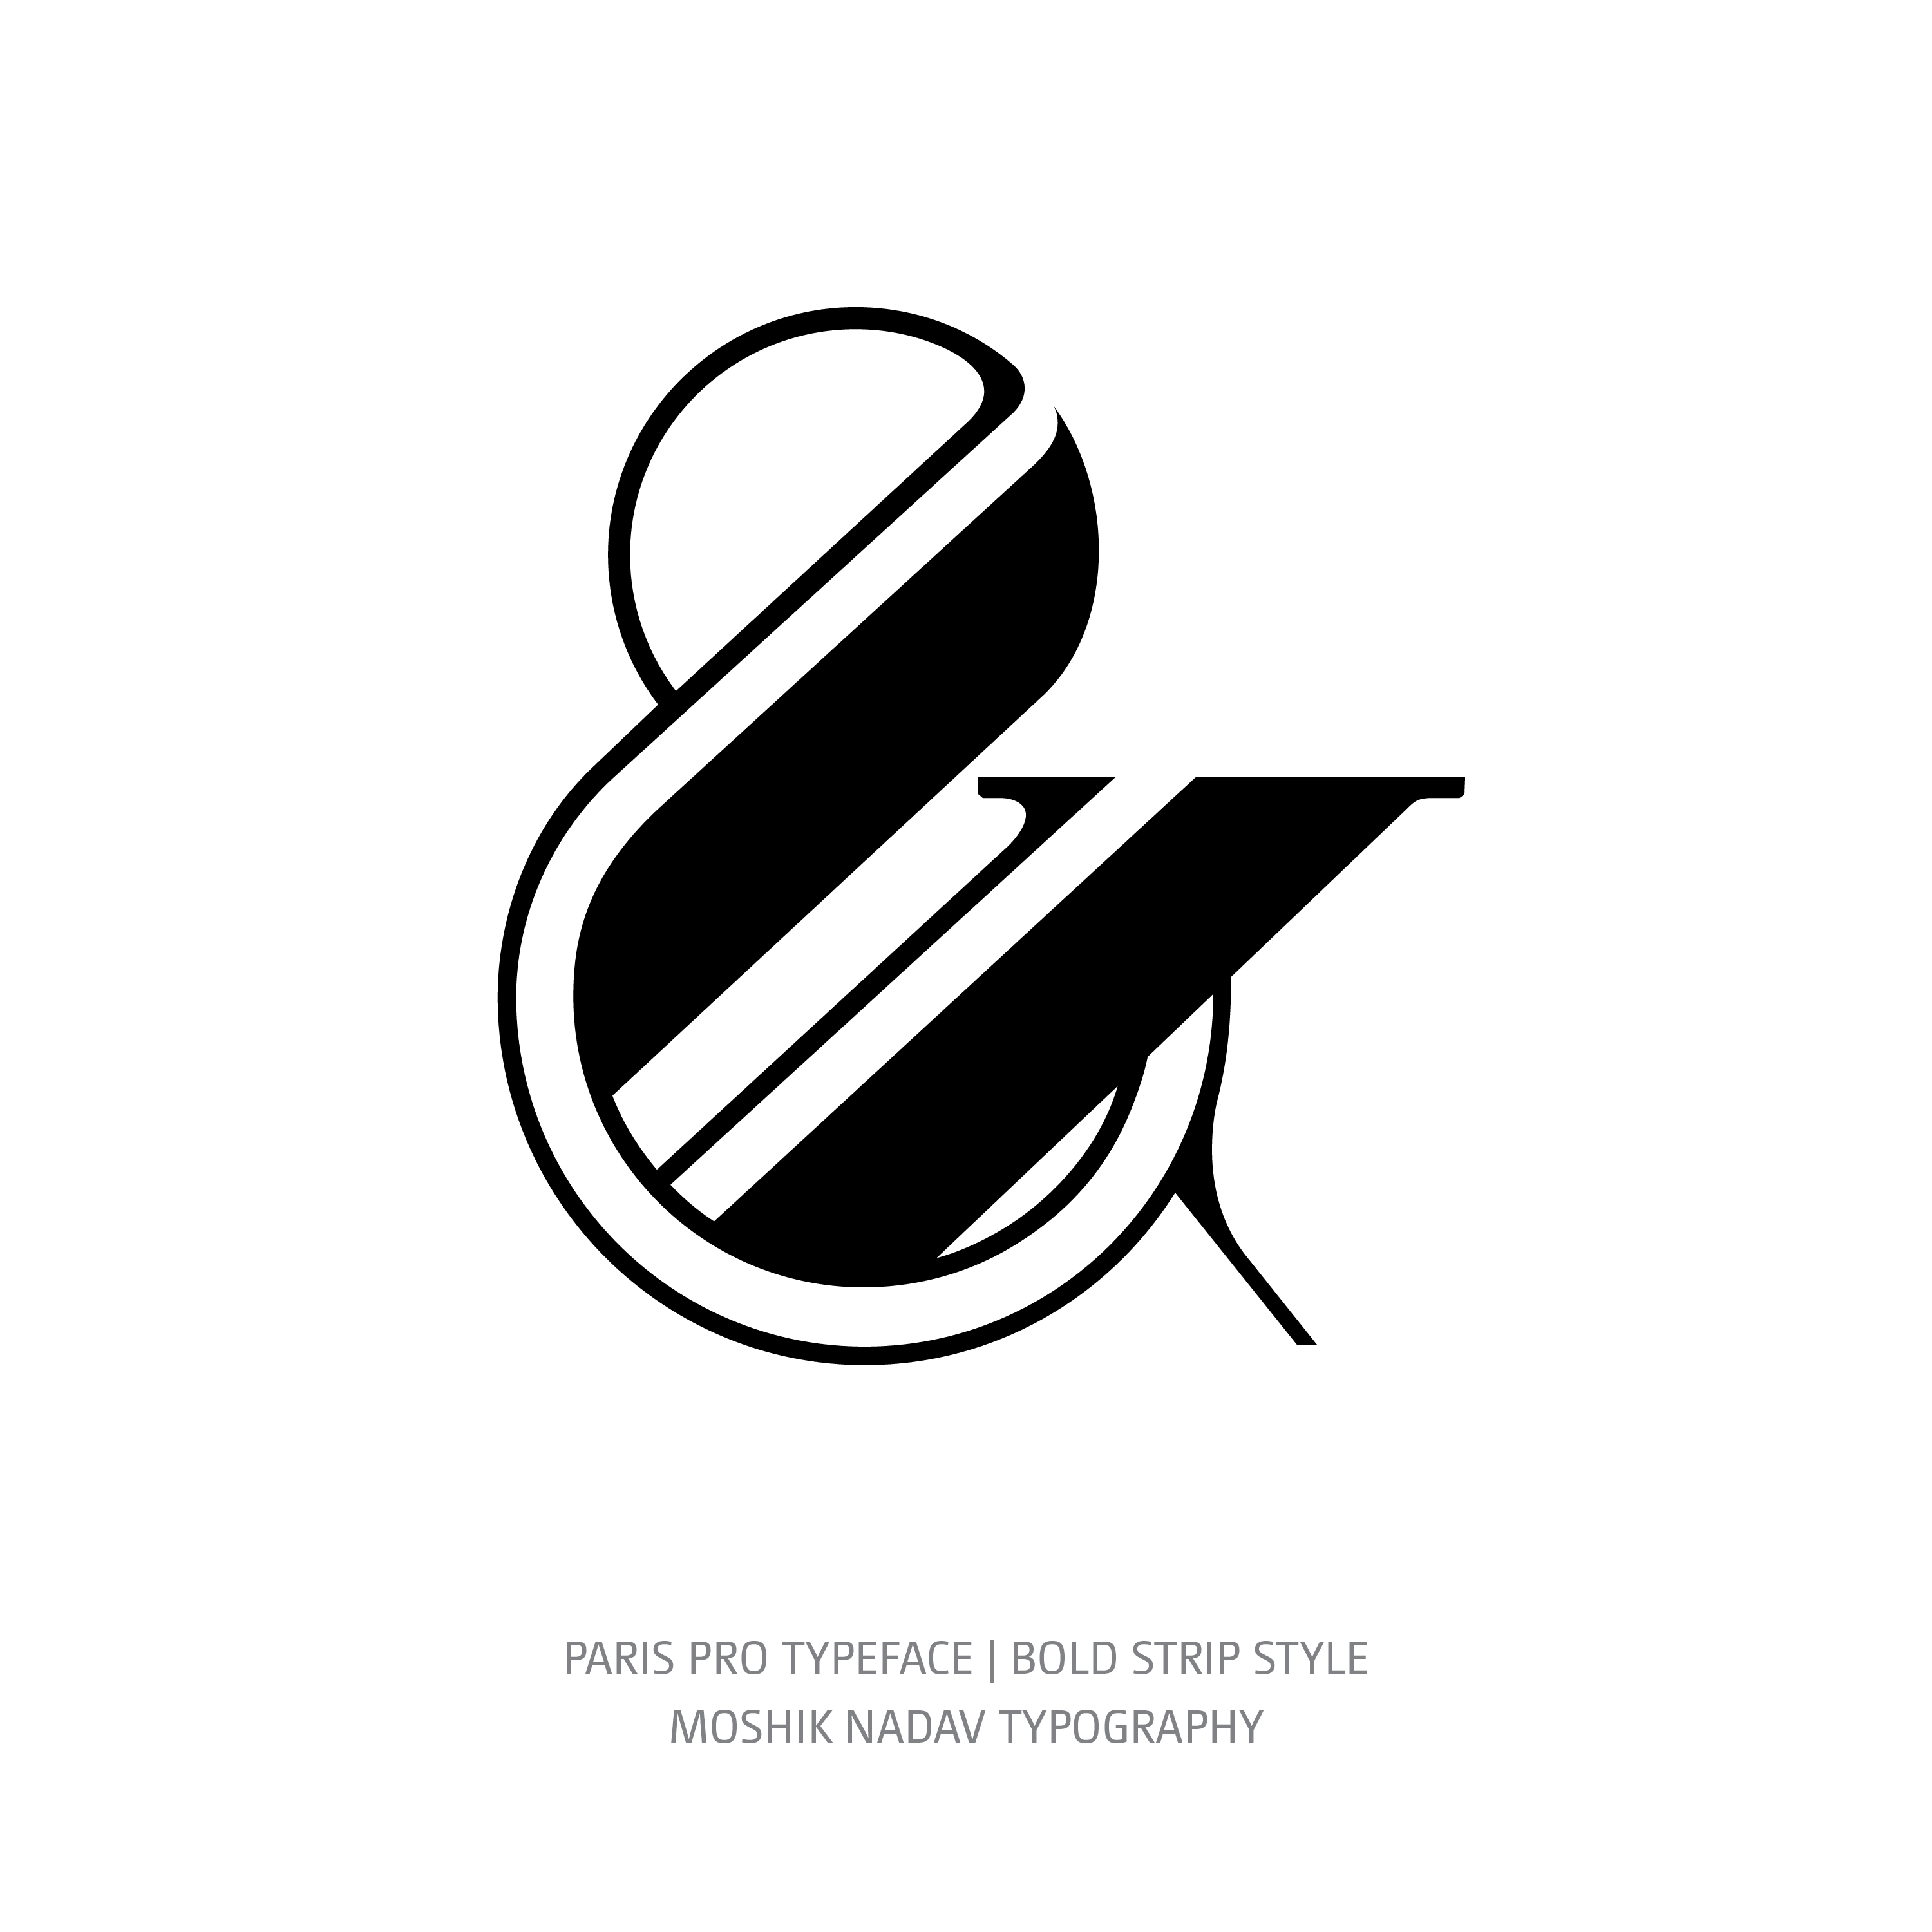 Paris Pro Typeface Bold Strip glyph